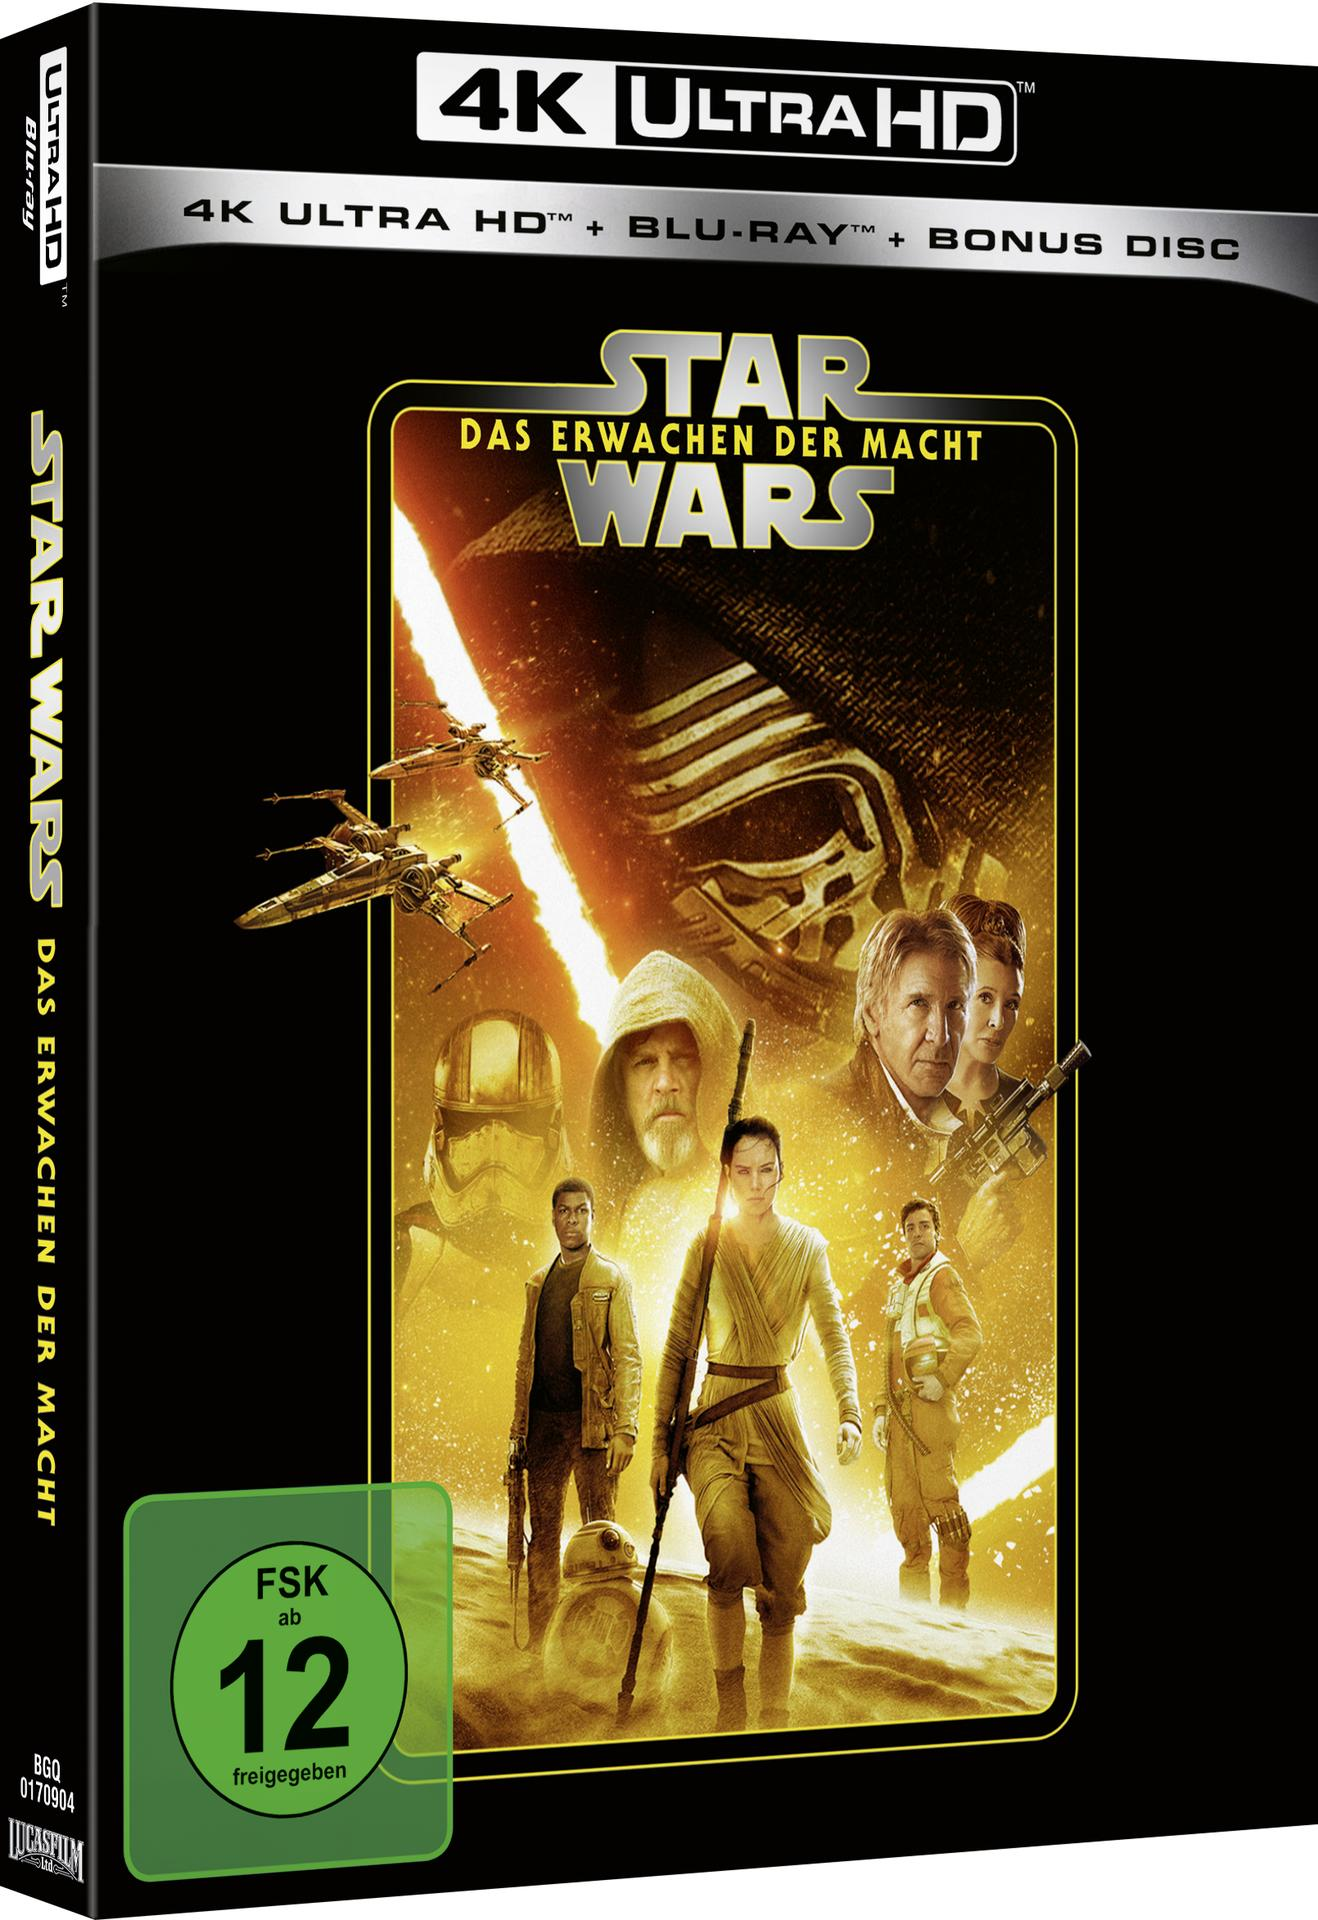 Star Wars: Das Erwachen + 4K Blu-ray Ultra Blu-ray der Macht HD